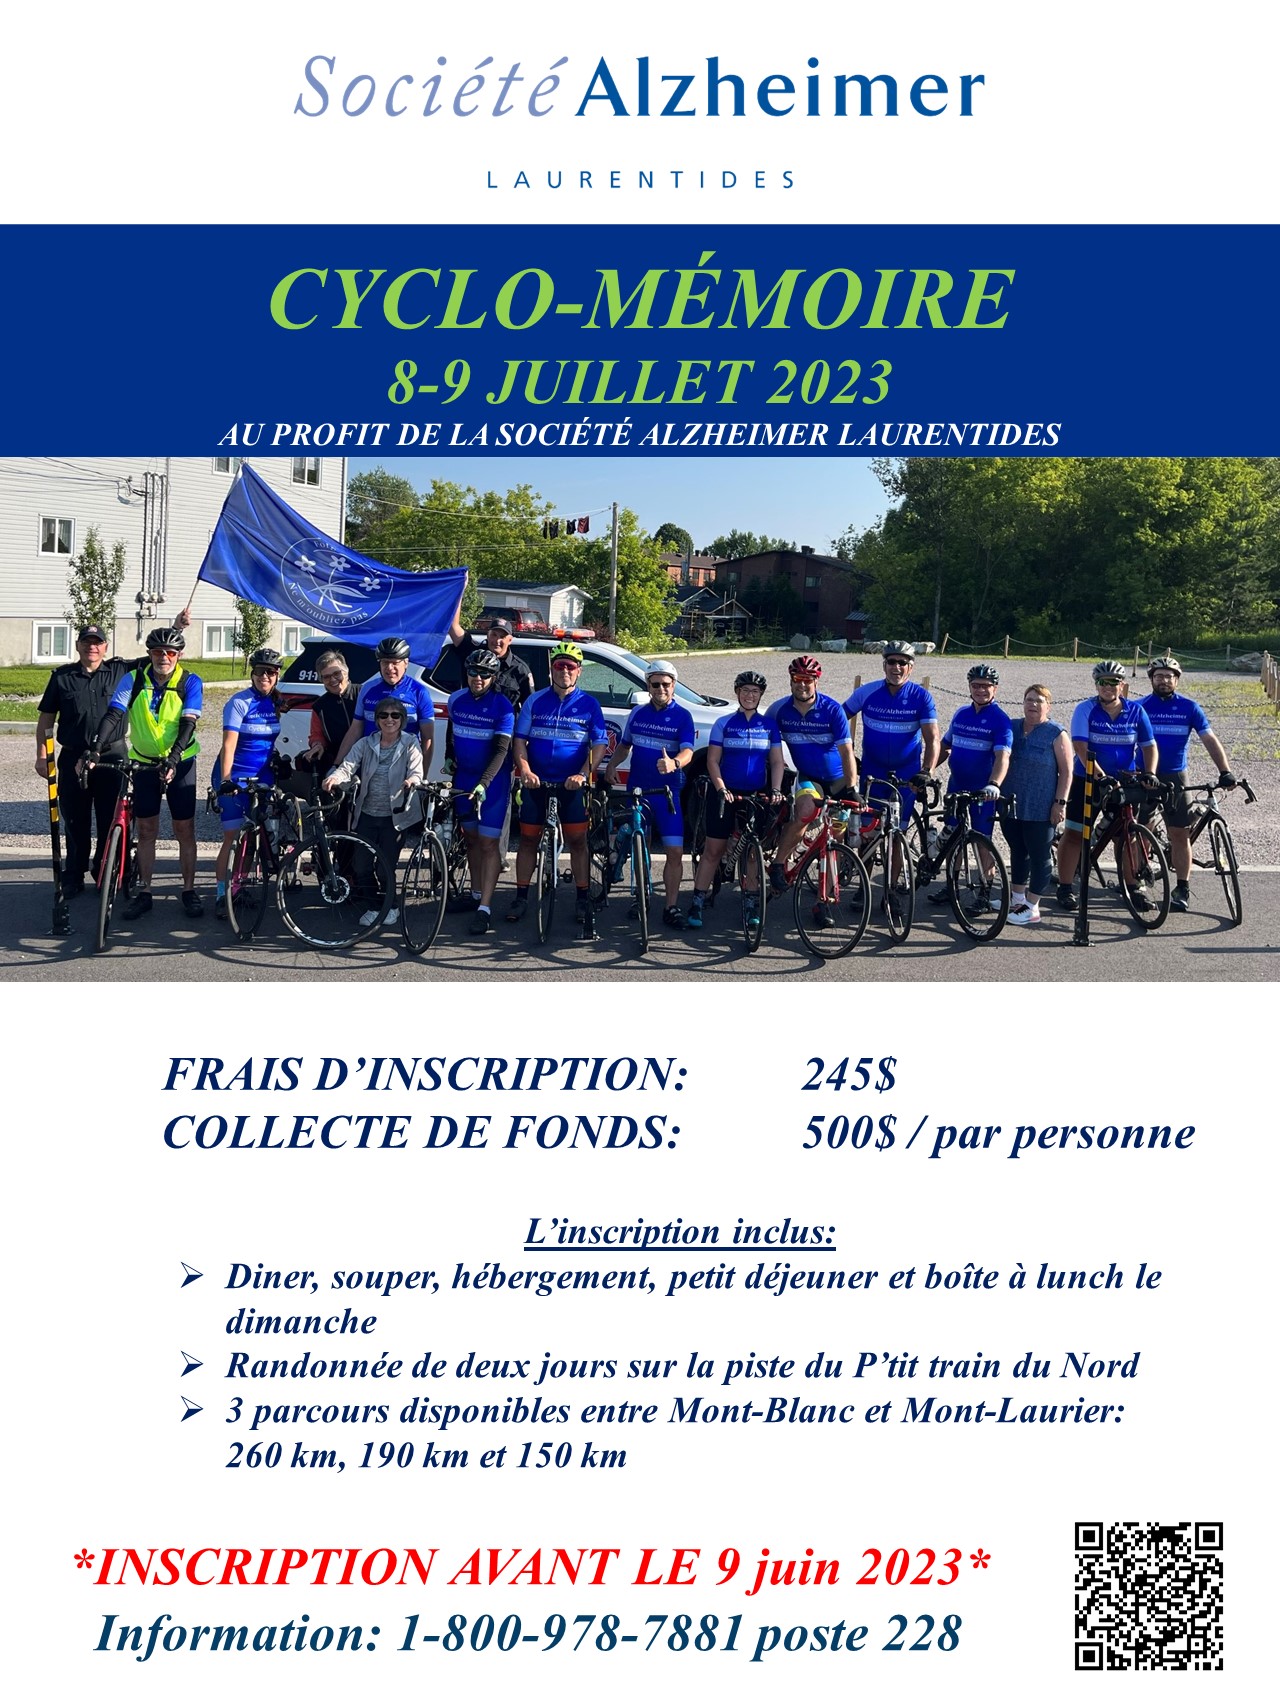 Cyclo-mémoire 2023